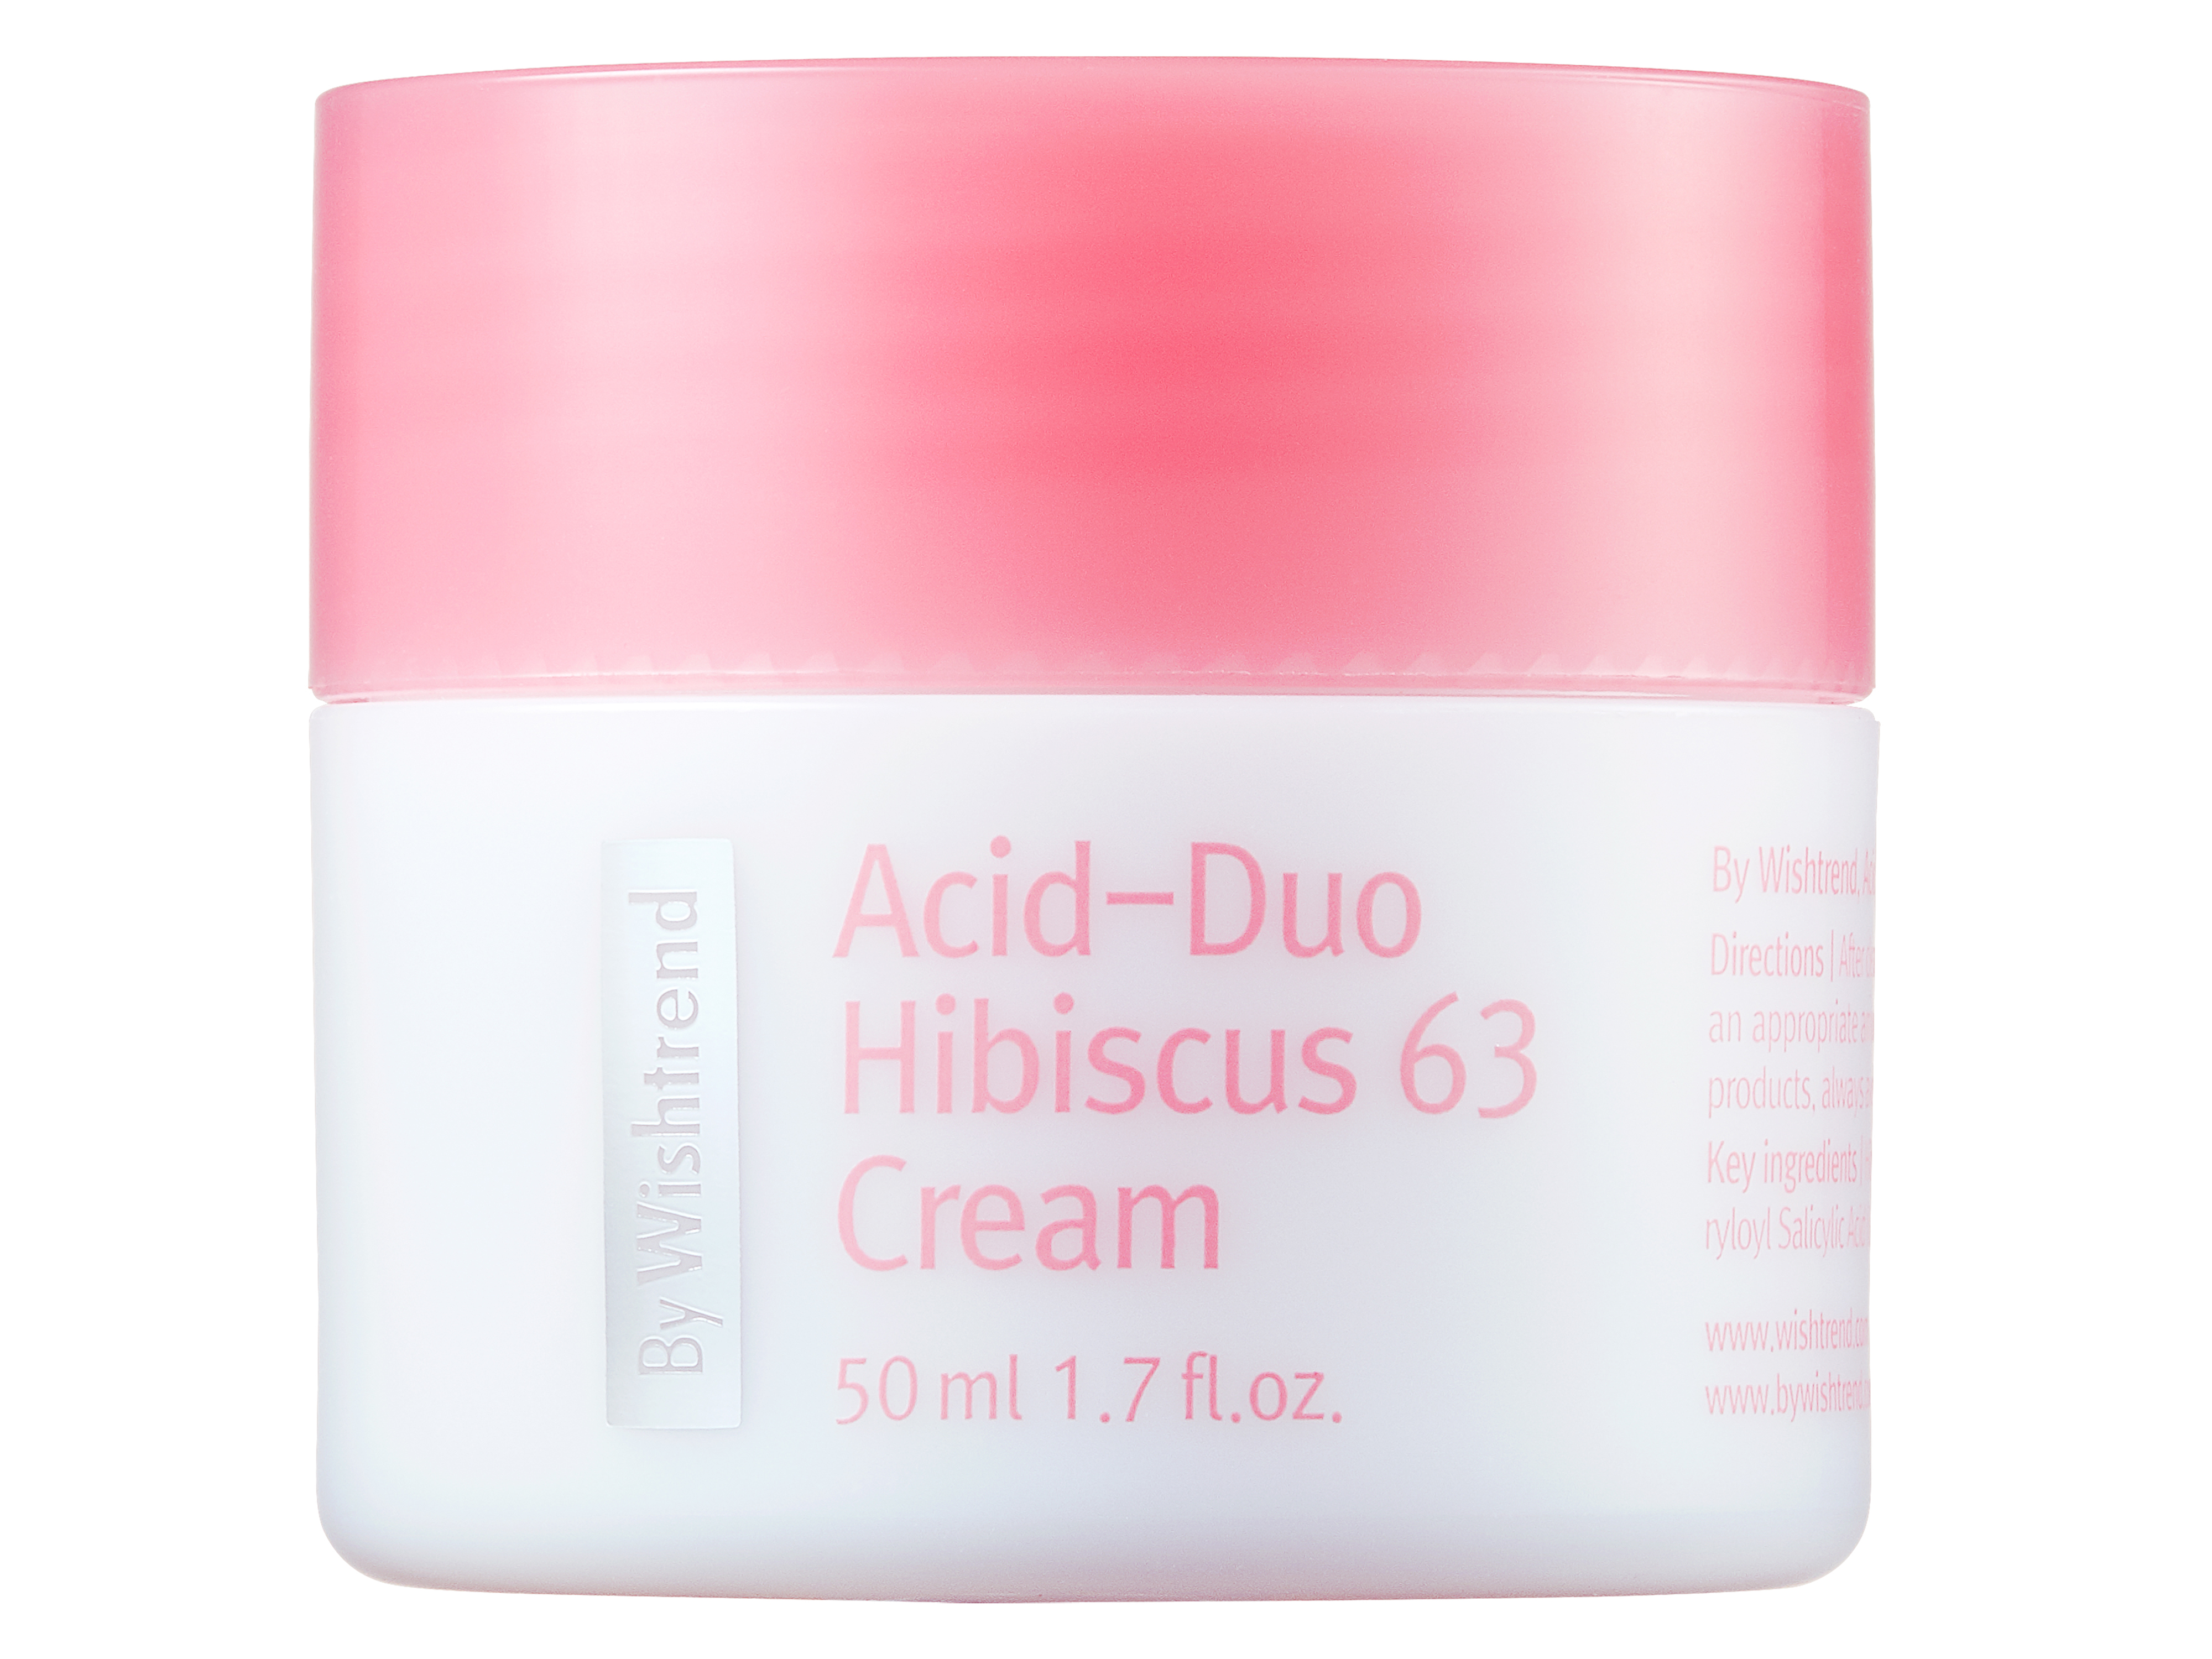 Acid-Duo Hibiscus 63 Cream, 50 ml